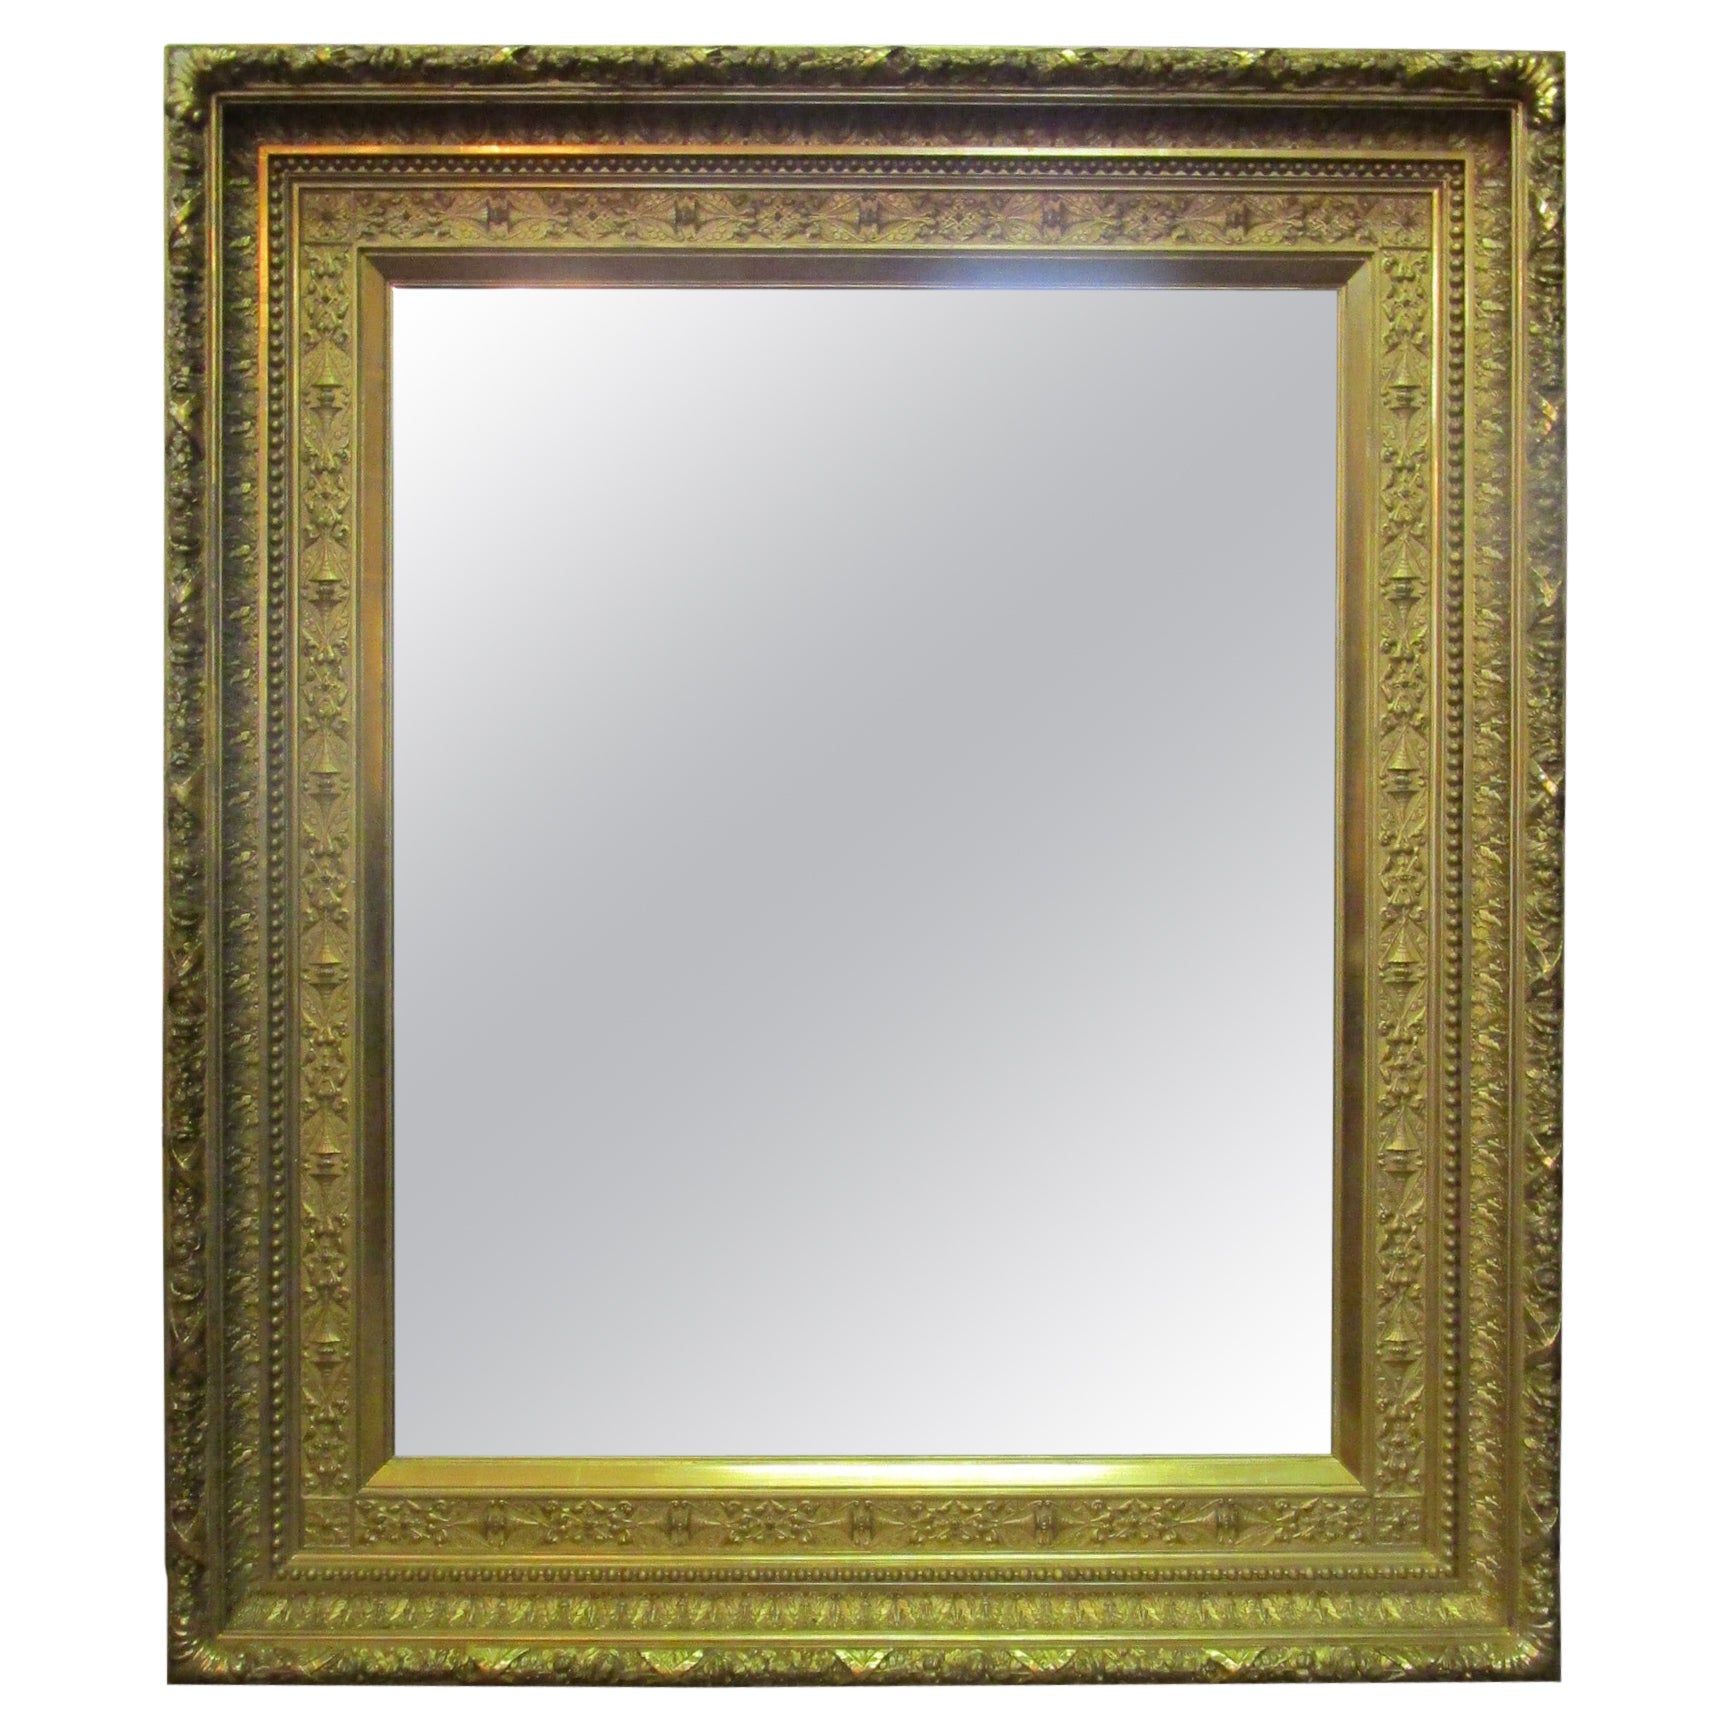 Miroir massif en bois doré de l'Aesthetic Movement, 19e siècle